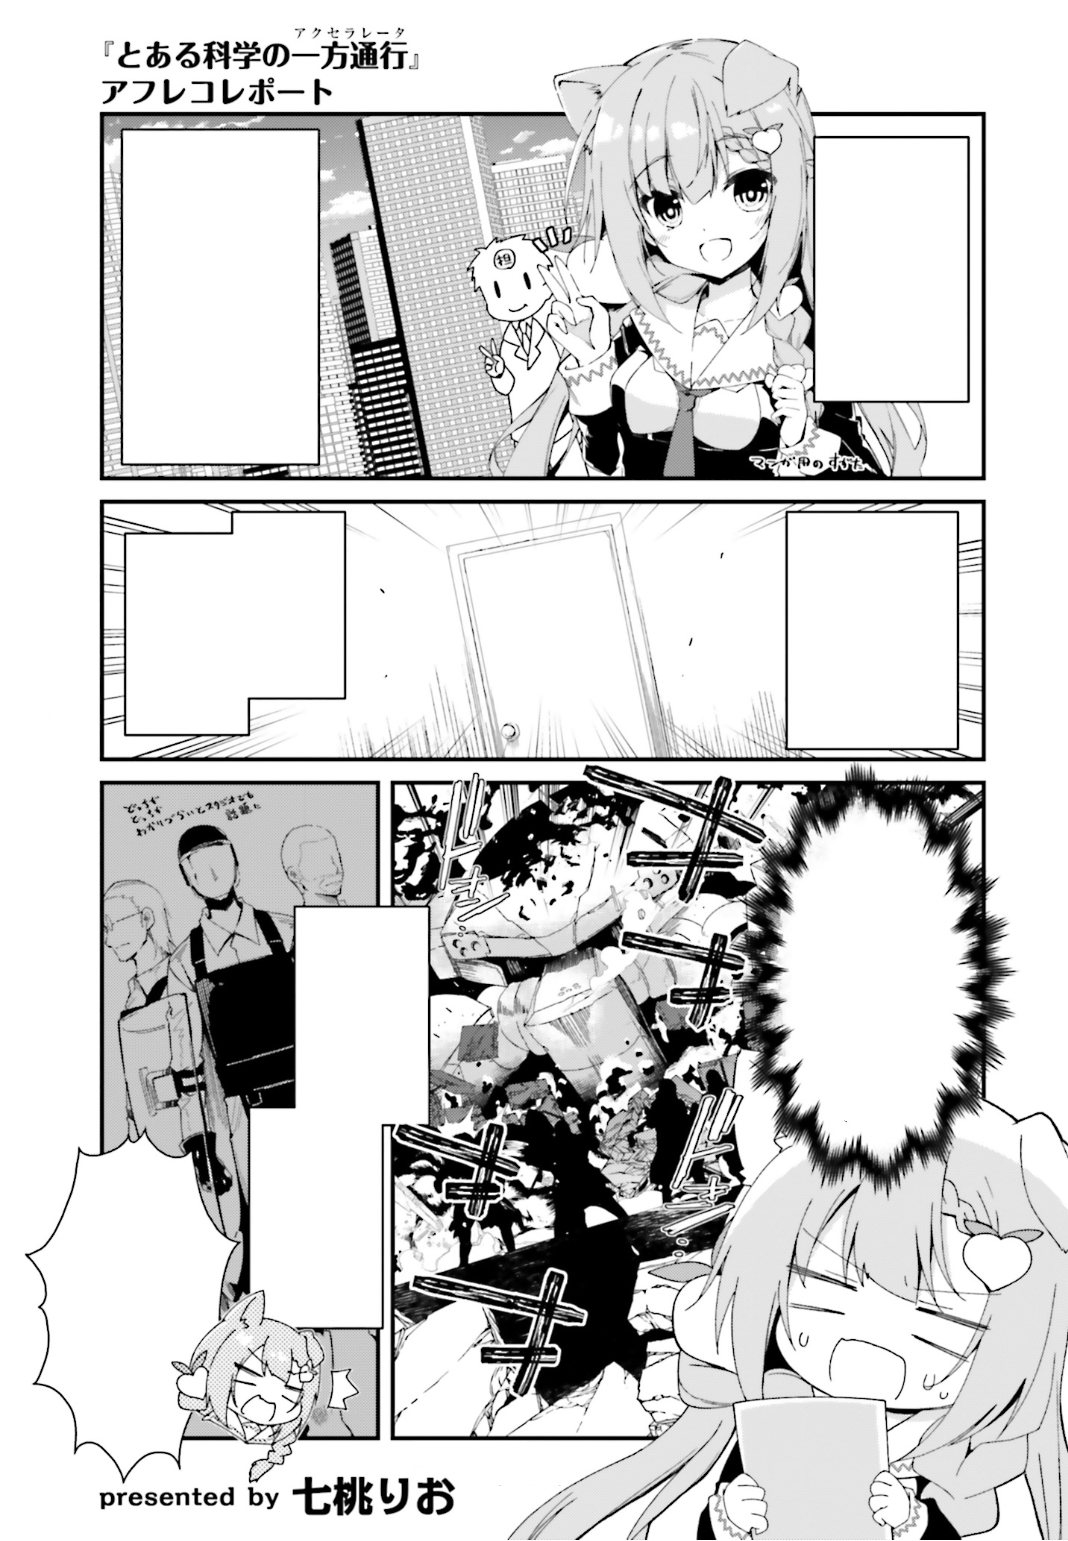 Toaru Kagaku no Accelerator Manga Chapter 003, Toaru Majutsu no Index Wiki